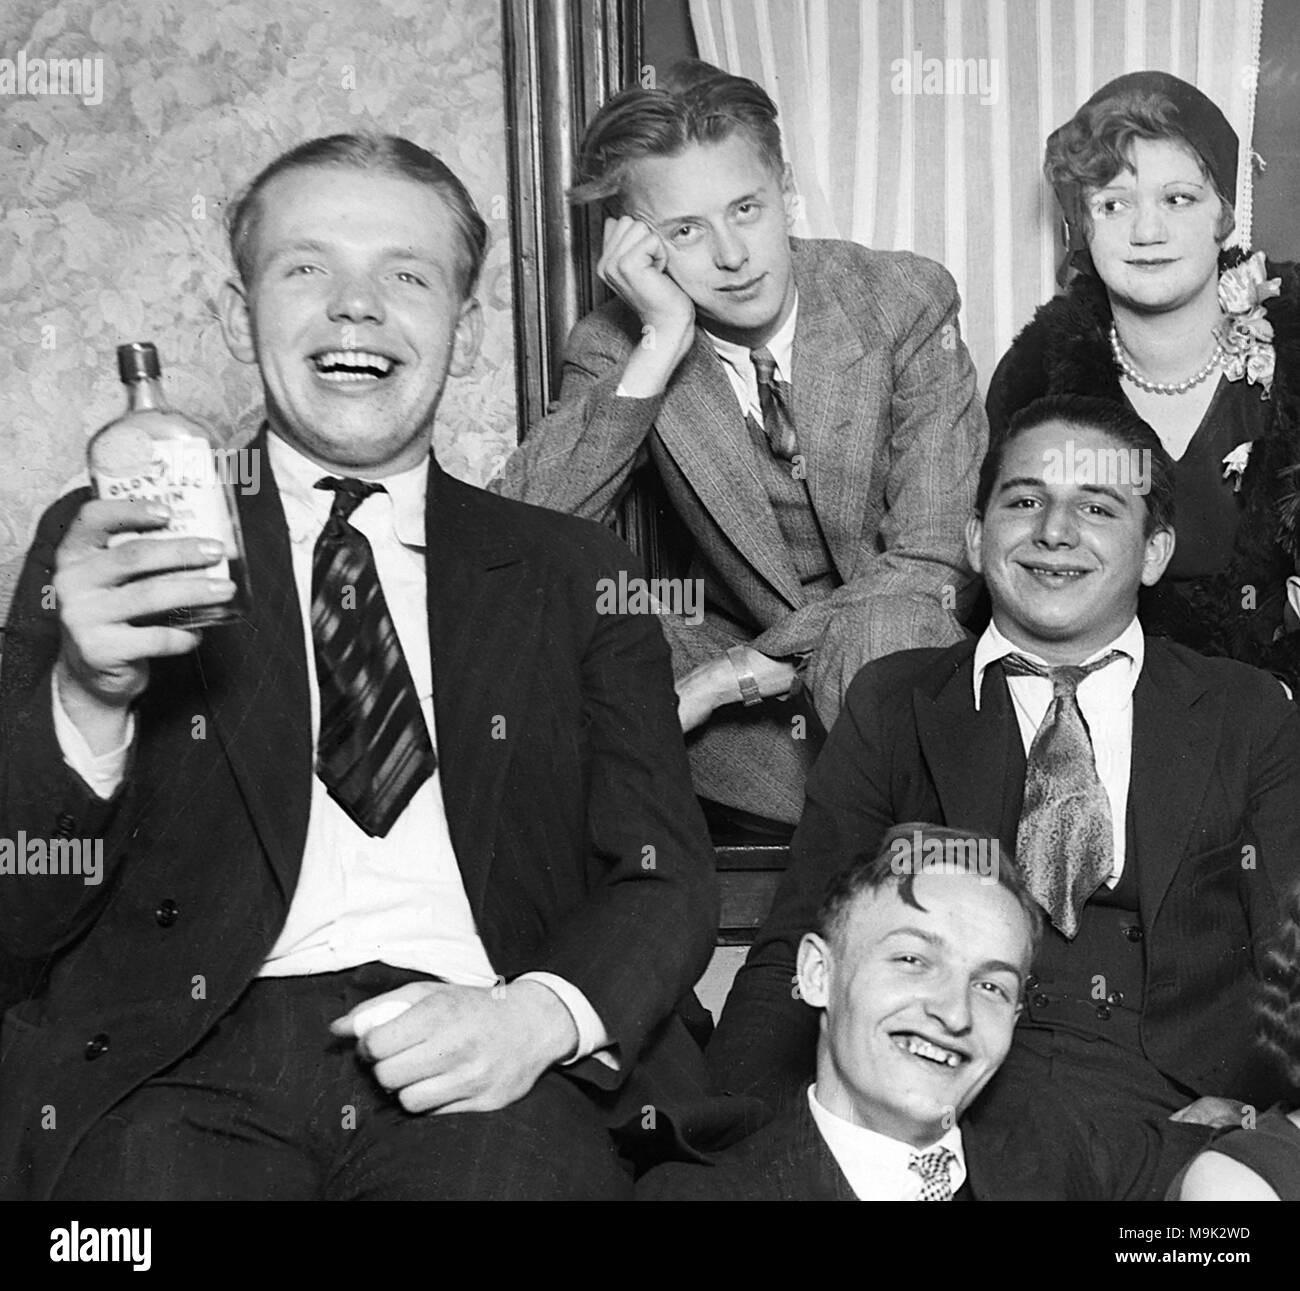 Los jóvenes beben bootleg whiskey viejo denominado "Log Cabin" durante la prohibición en Chicago en 1927. "Vieja Cabaña" fue Canadian Club whisky importado por el gángster Al Capone y Bugs Moran luego reembotellados, y distribuidos en el área de Chicago. Foto de stock